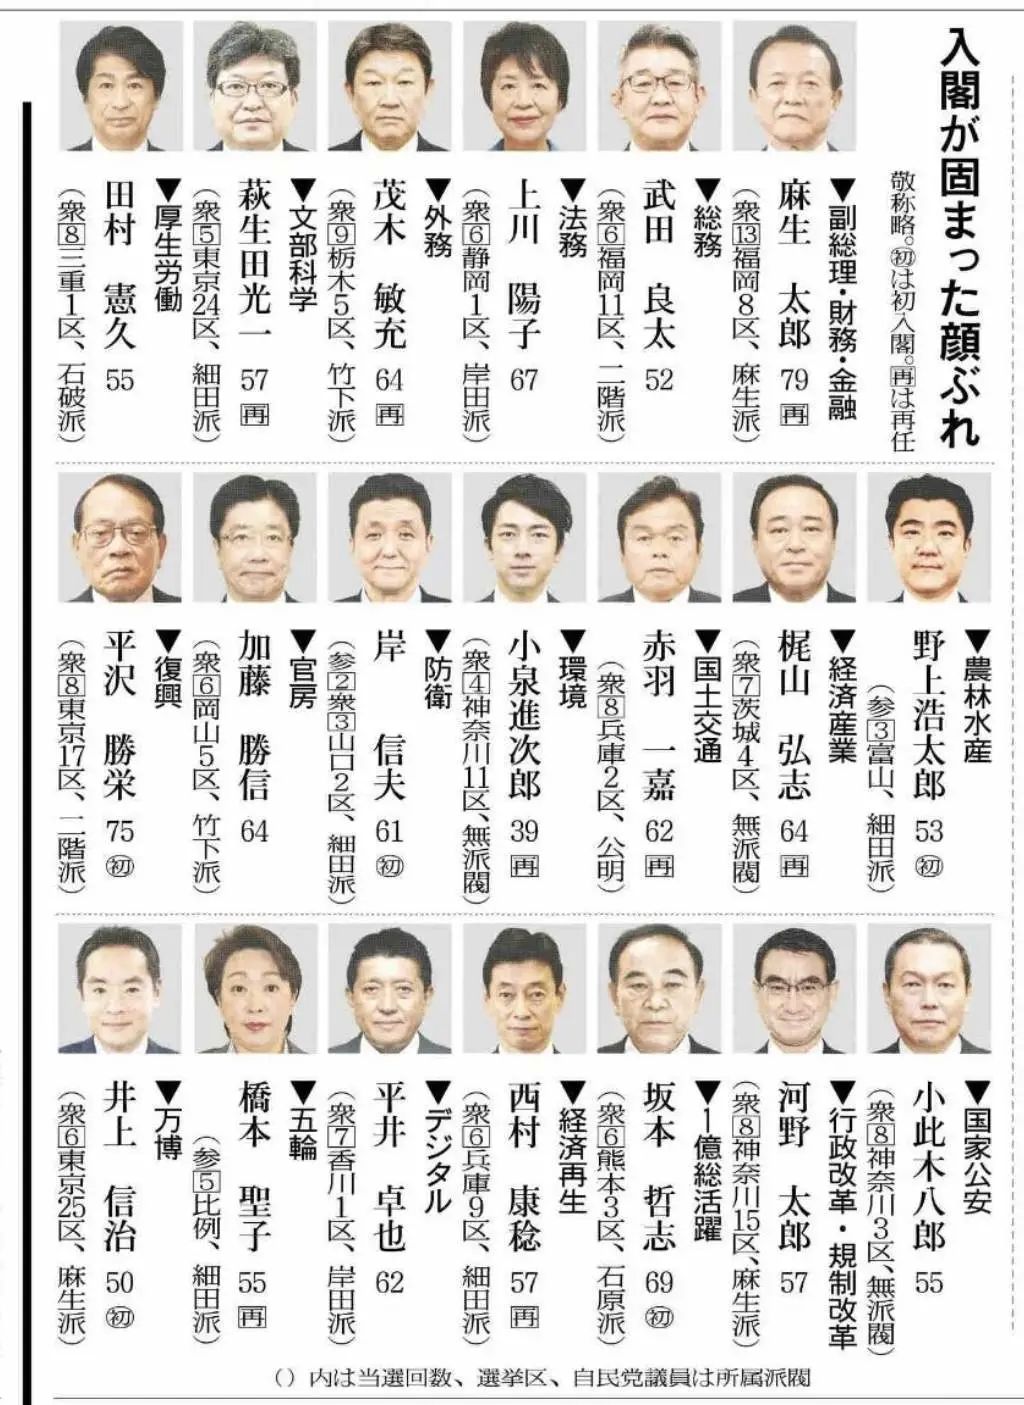 图为《读卖新闻》报道的菅义伟内阁成员名单。